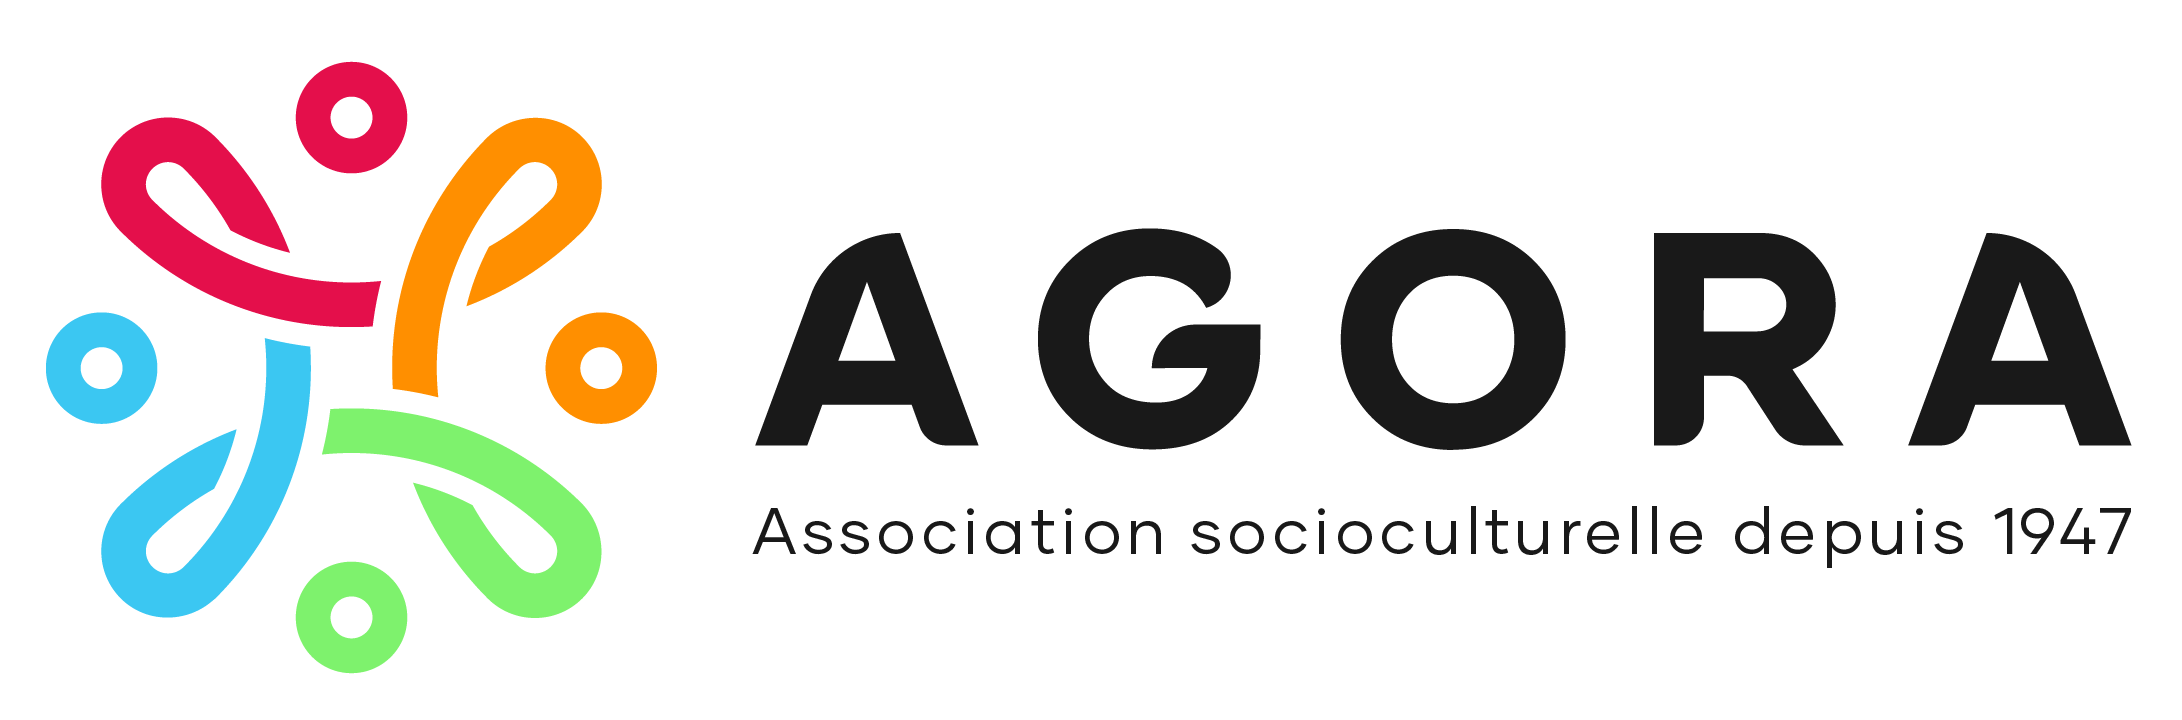 Association socioculturelle AGORA logo